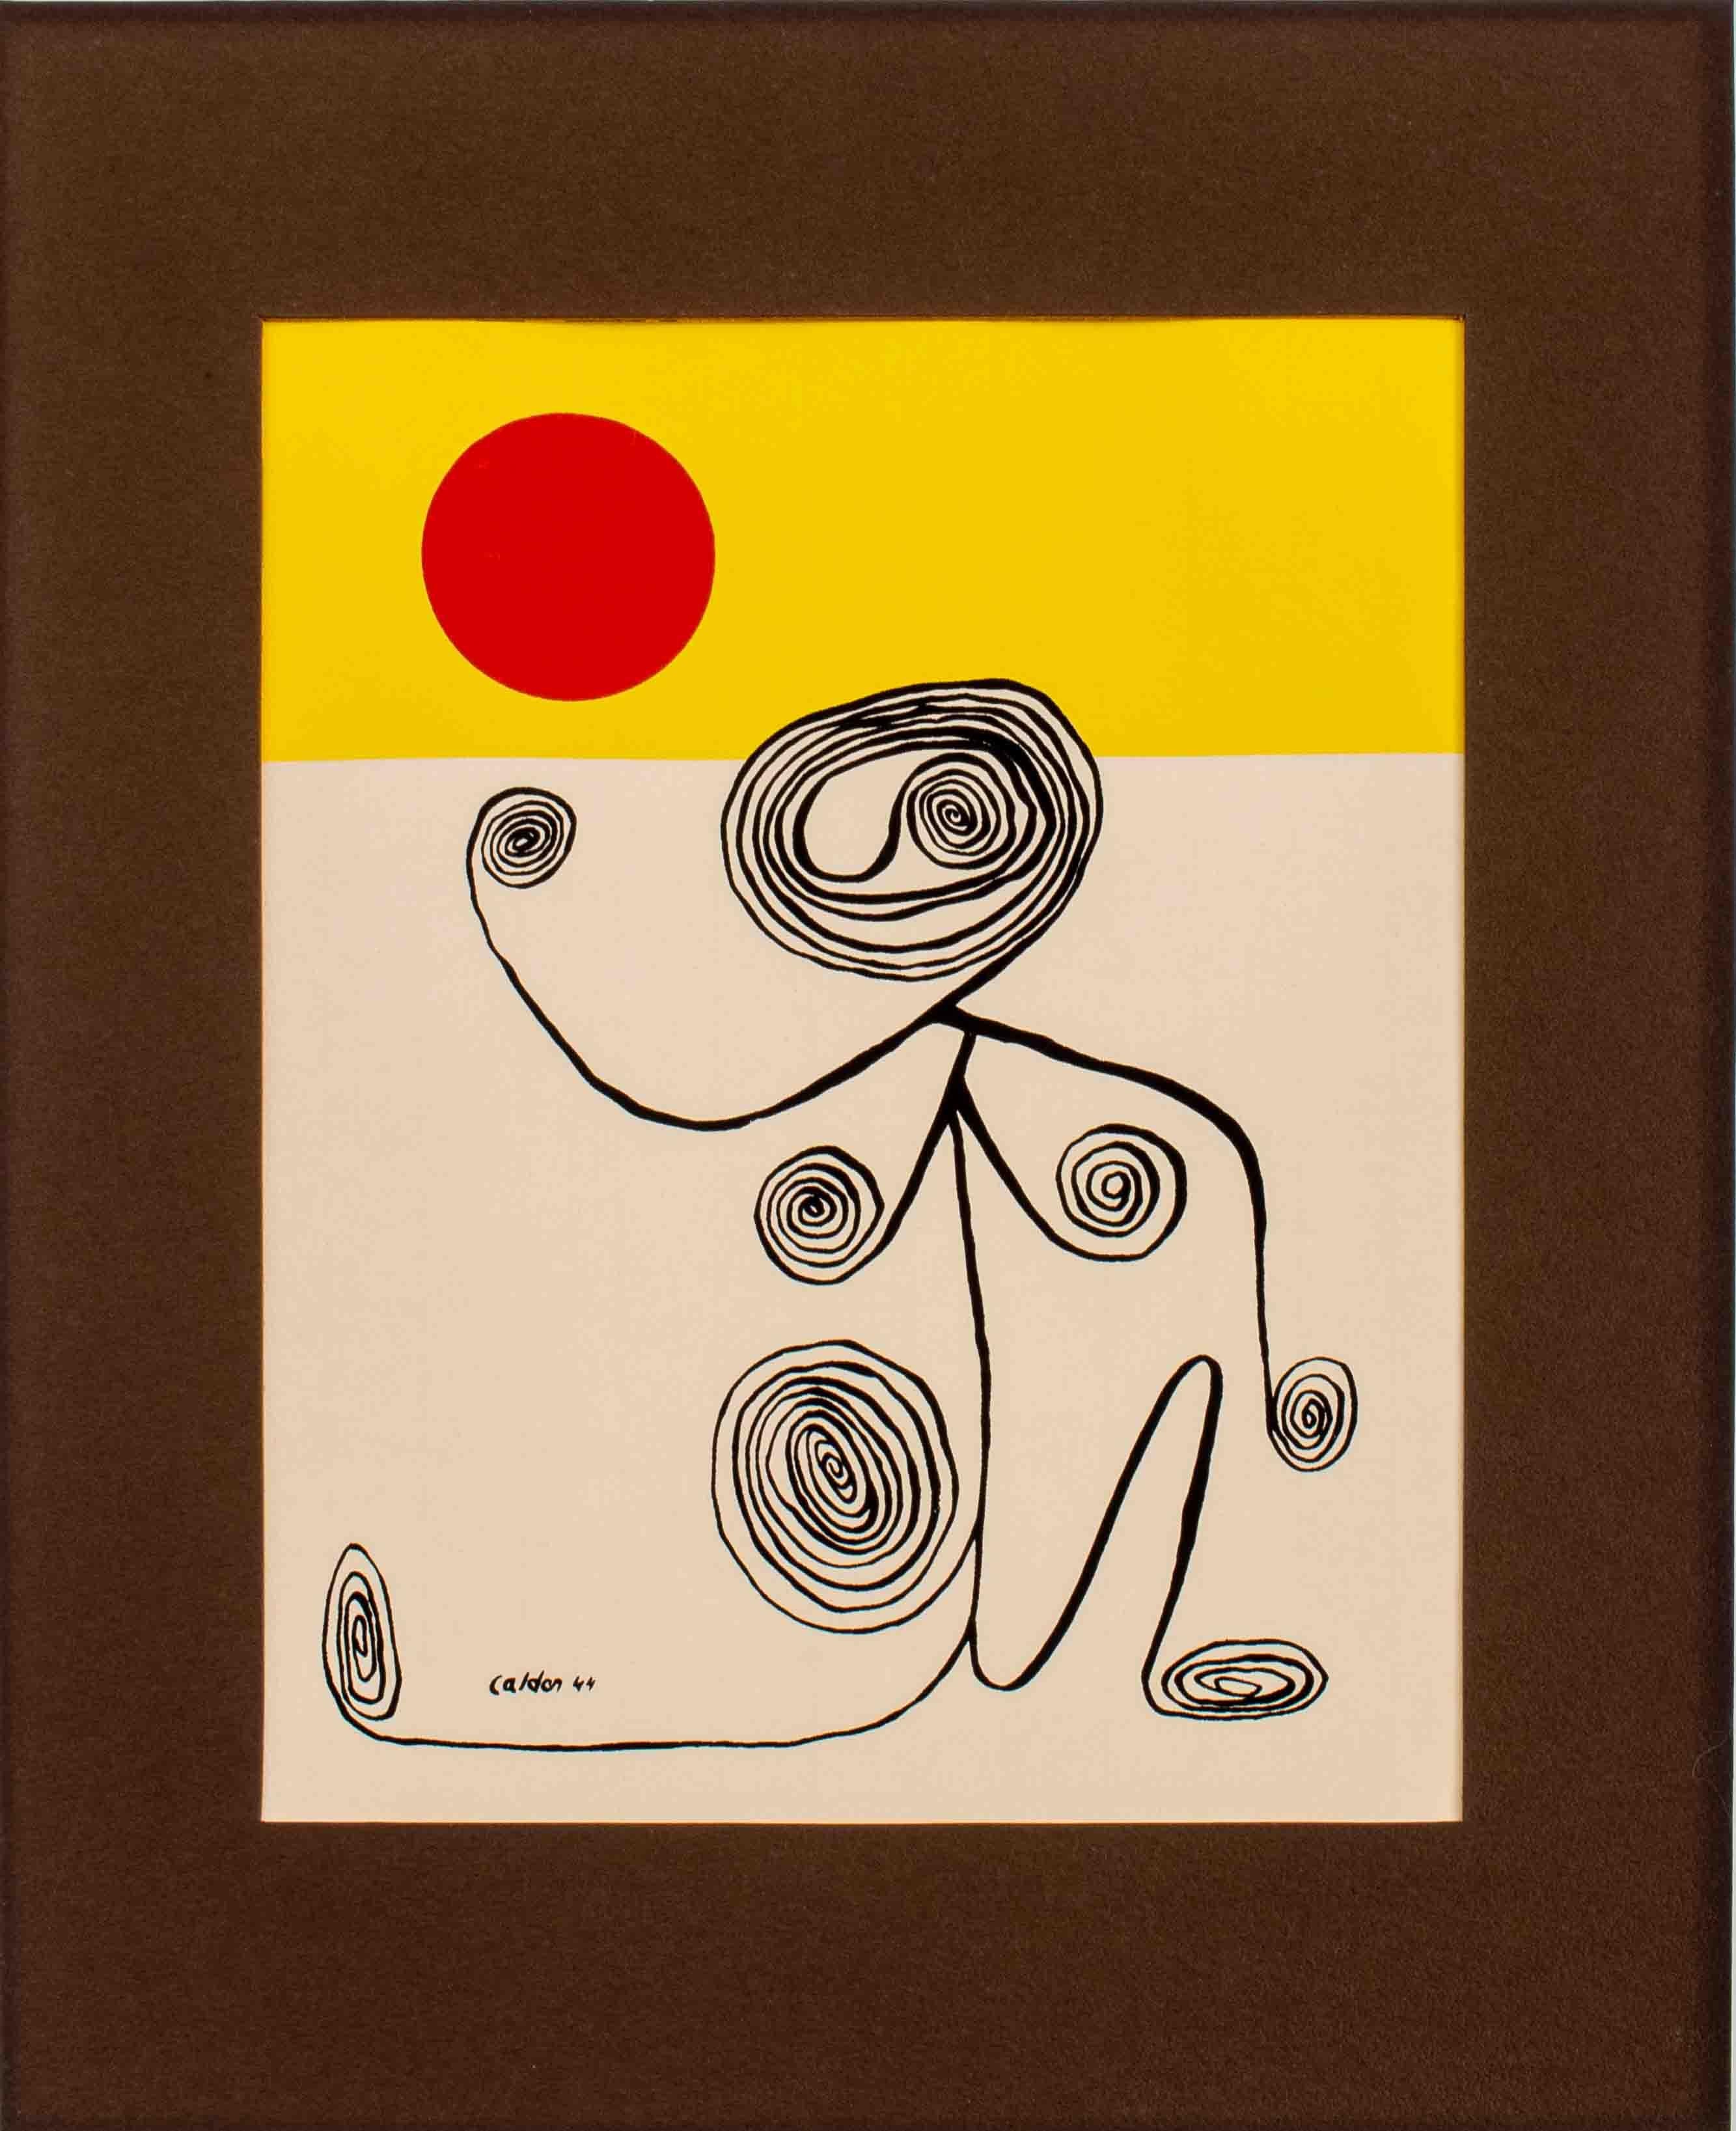 Alexander Calder (Amerikaner, 1898 - 1976), Wire Figure, Lithographie, 1944, signiert in der Platte unten links, ungerahmt.

Abmessungen: Bild: 13.75